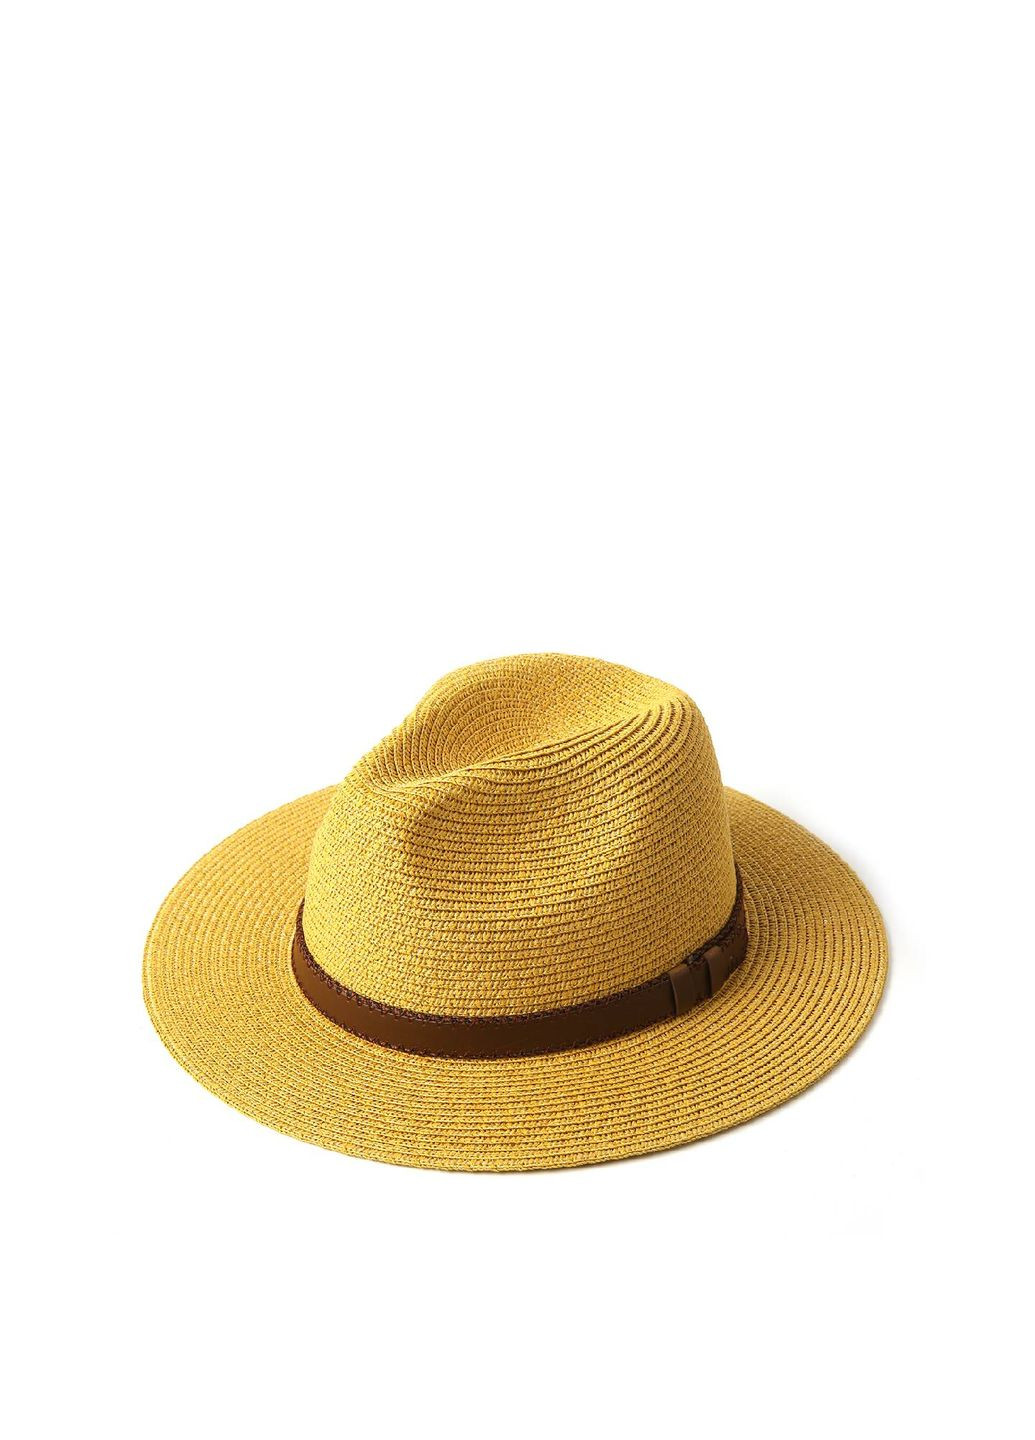 Шляпа федора мужская бумага желтая BAY 843-890 LuckyLOOK 843-890м (289478402)